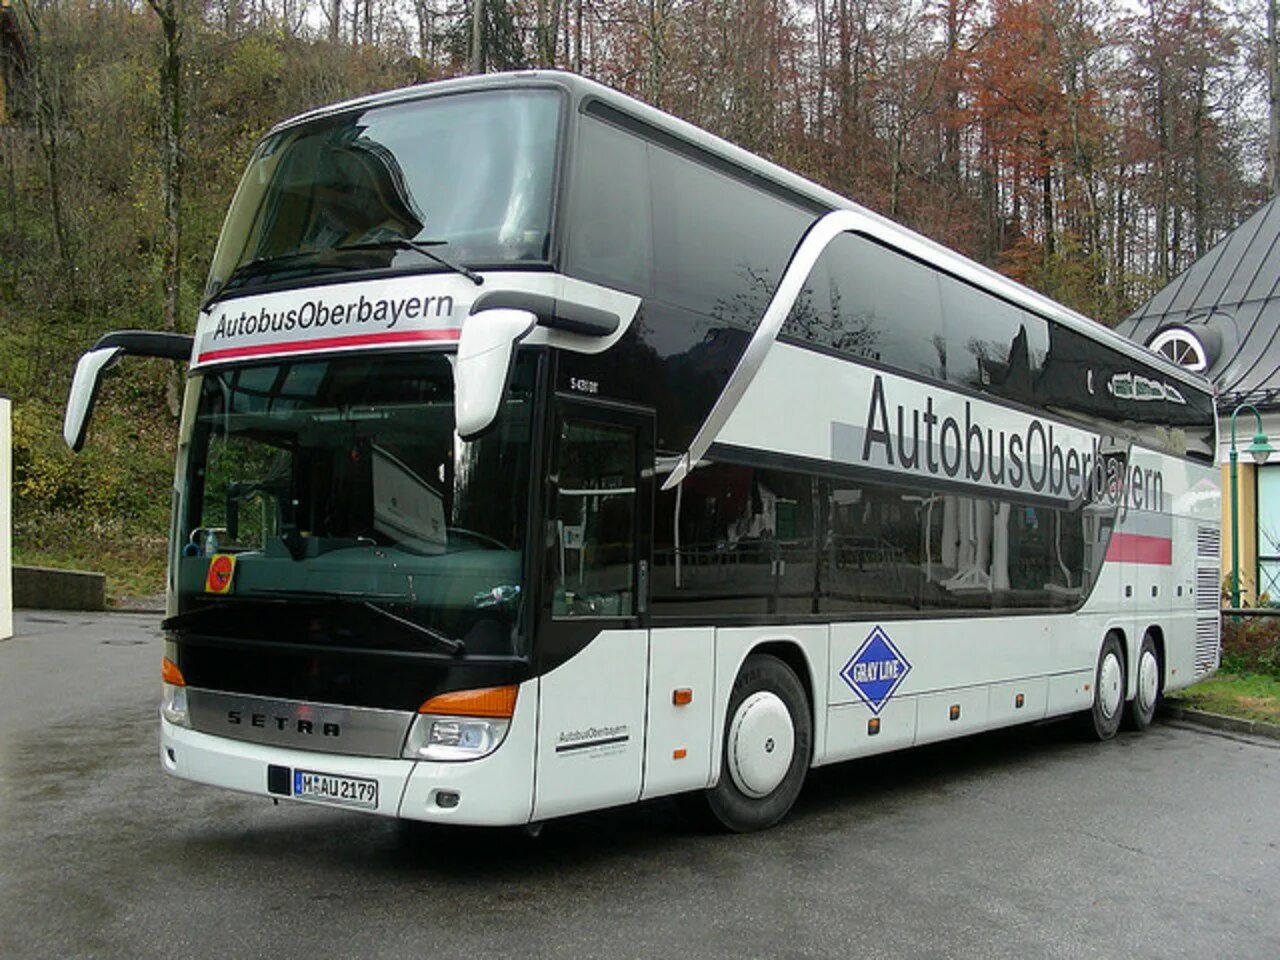 Автобус экскурсионный Setra. Setra автобус двухэтажный. Man Neoplan Setra автобус. Автобус сетра 2022.